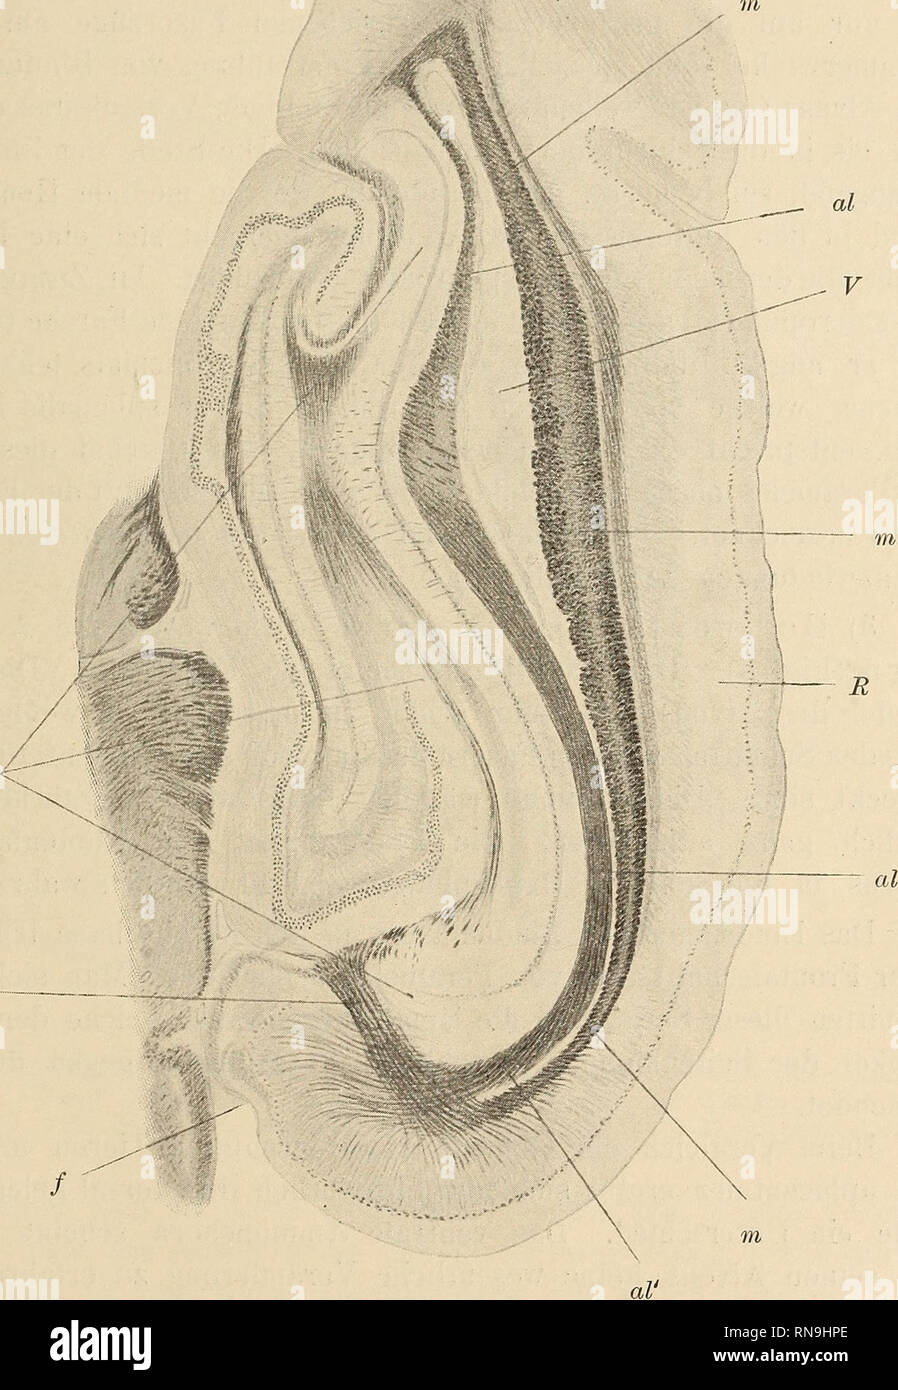 . Anatomischer Anzeiger. Anatomy, Comparative. 55 aus dem Stratum lacunosum des Ammonshorns, sowie aus dem Stratum zonale der Fascia dentata hervorgeht, die Fissura hippocampi, gegen die hin die Bündel des Stratum konvergieren, durchsetzt und in das Hemisphärenmark einstrahlt. 2) Horizontalschnitt durch das dorsale Ammojis- horn (Fig. 2). Das dorsale Ammonshorn (Am) ist seiner ganzen Am F.c.. Fig. 2. Perameles. Rechte Hemisphäre. Horizontal schnitt durch das dorsale Ammonshorn. Vergr. 10/1. Am. Ammonshorn. al. Alveus. al' Rindenbündel des Alveus. f. Sulcus splenialis. F. c. d. Fasciculus corti Stock Photo